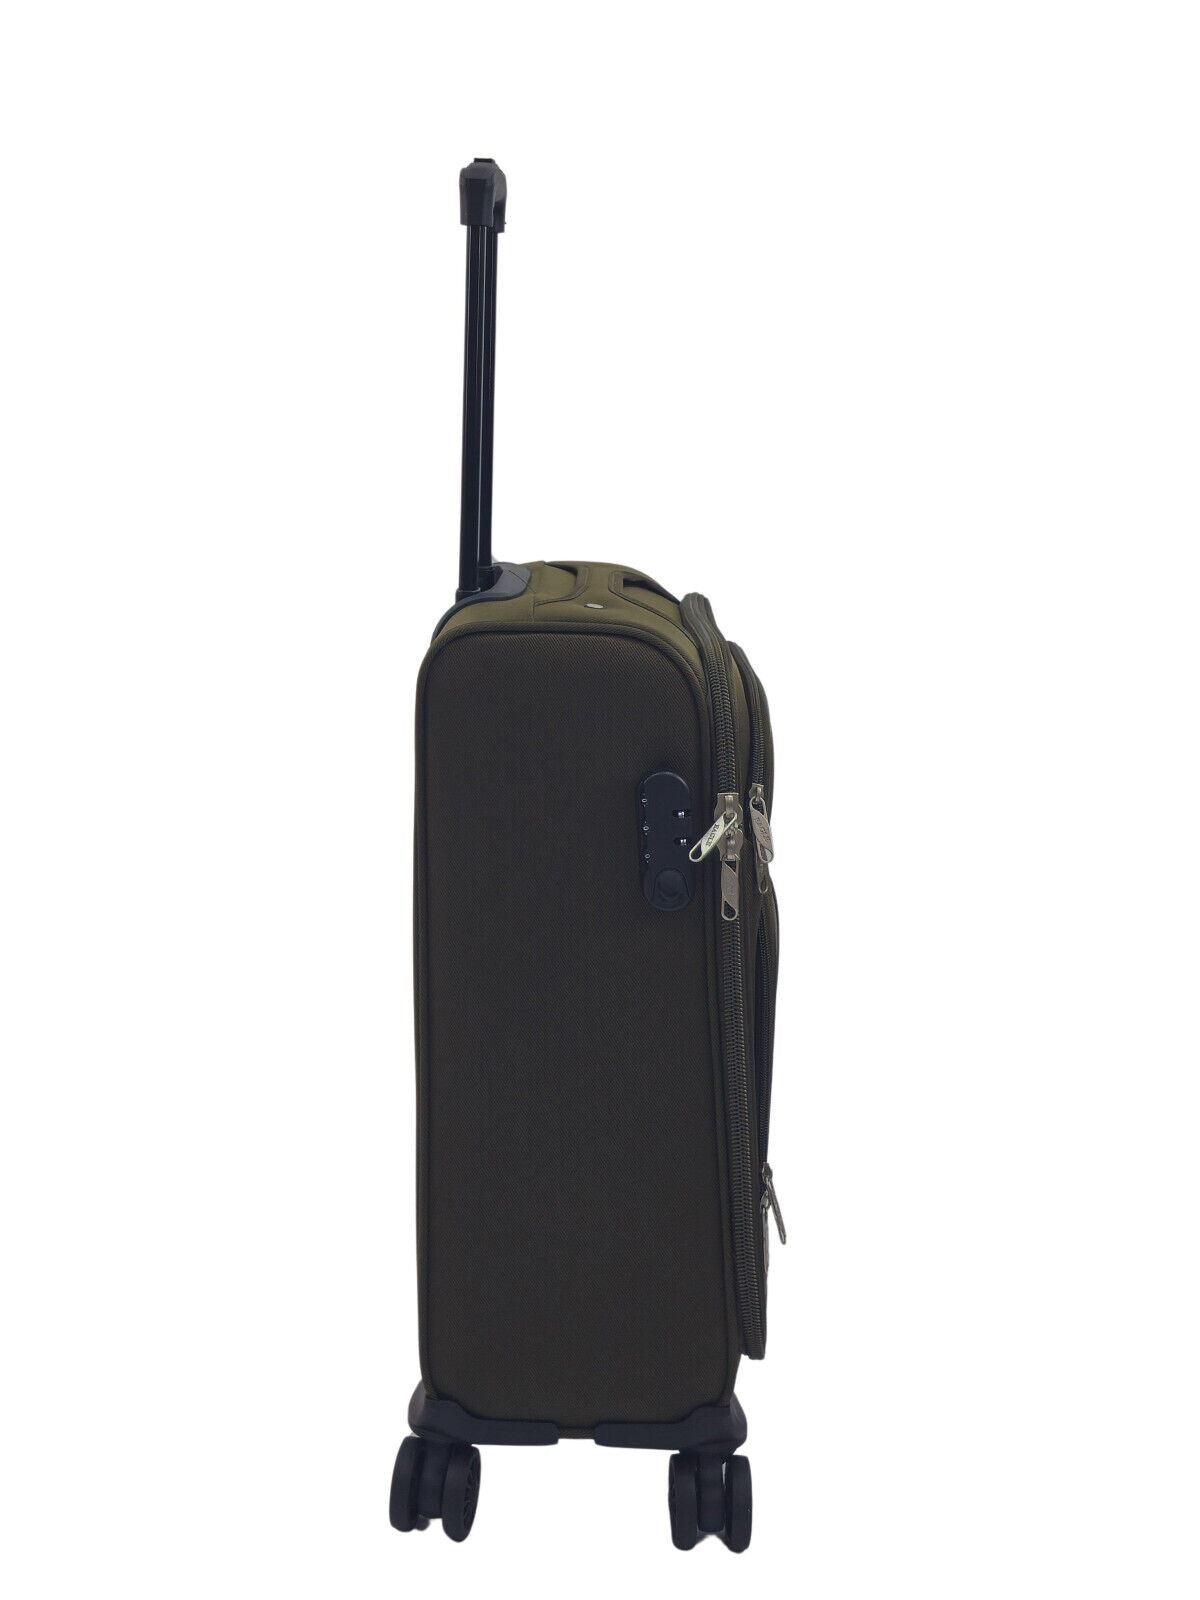 Ashland Cabin Soft Shell Suitcase in Khaki